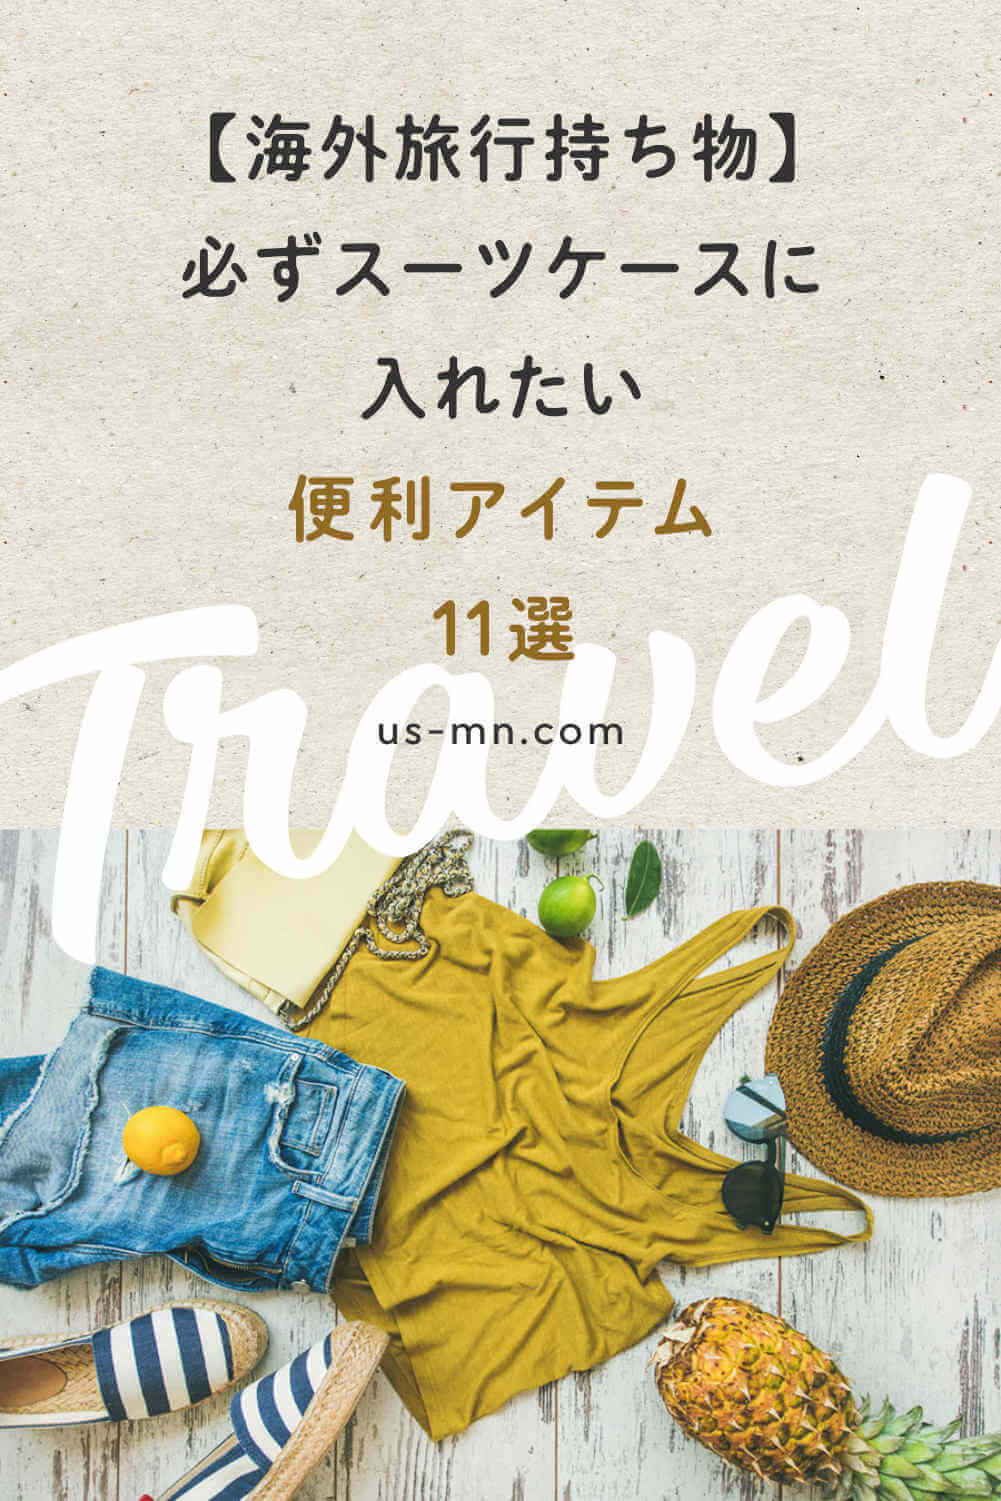 【海外旅行持ち物】必ずスーツケースに入れたい便利アイテム11選